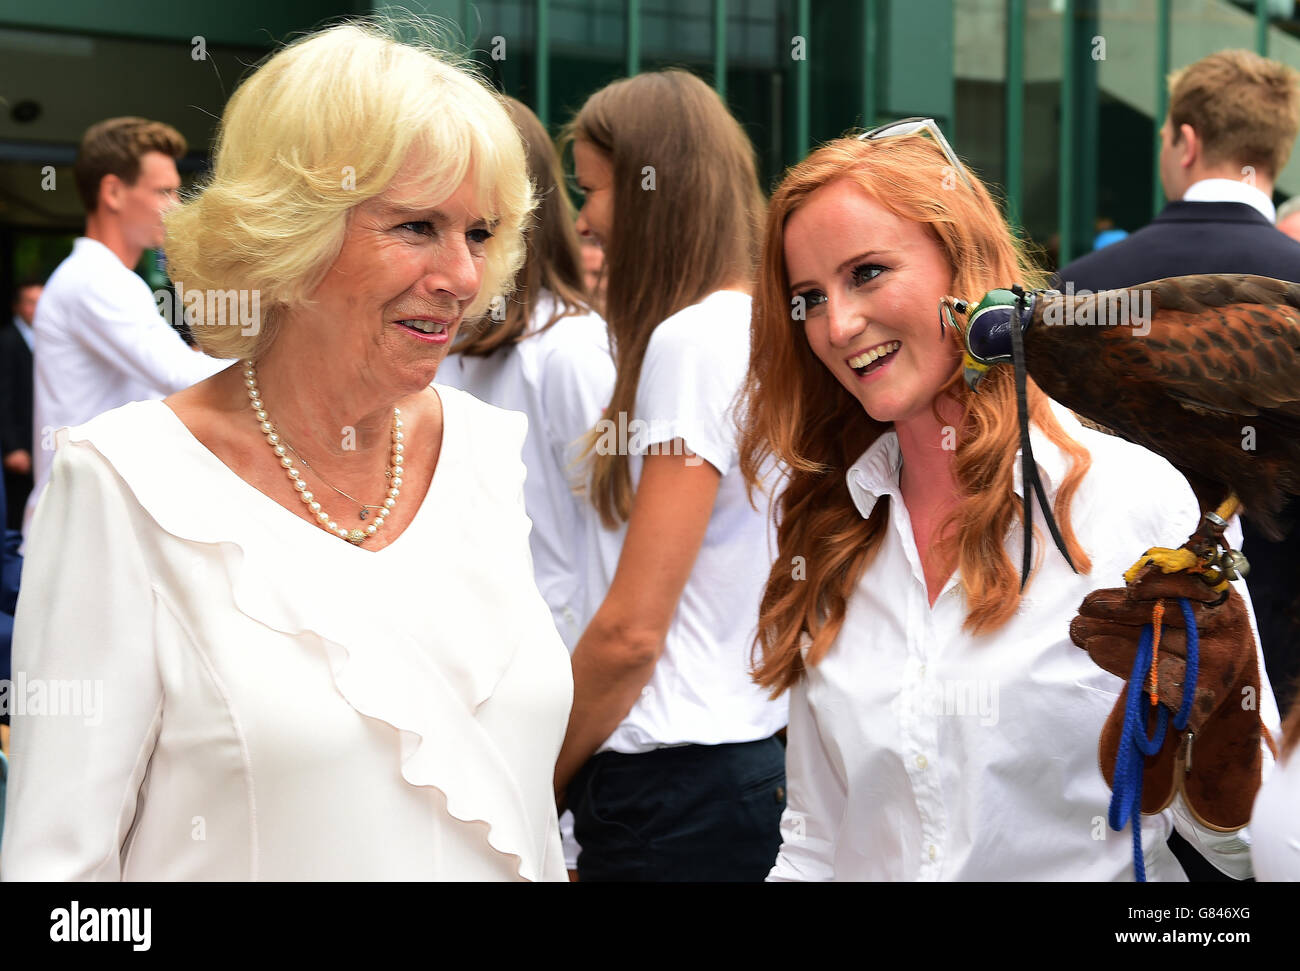 La Duchessa di Cornovaglia incontra Imogen Davis (a destra) e Hawk Rufus durante una visita ai campionati di tennis del Lawn all'All England Lawn Tennis Club di Wimbledon a Londra. Foto Stock